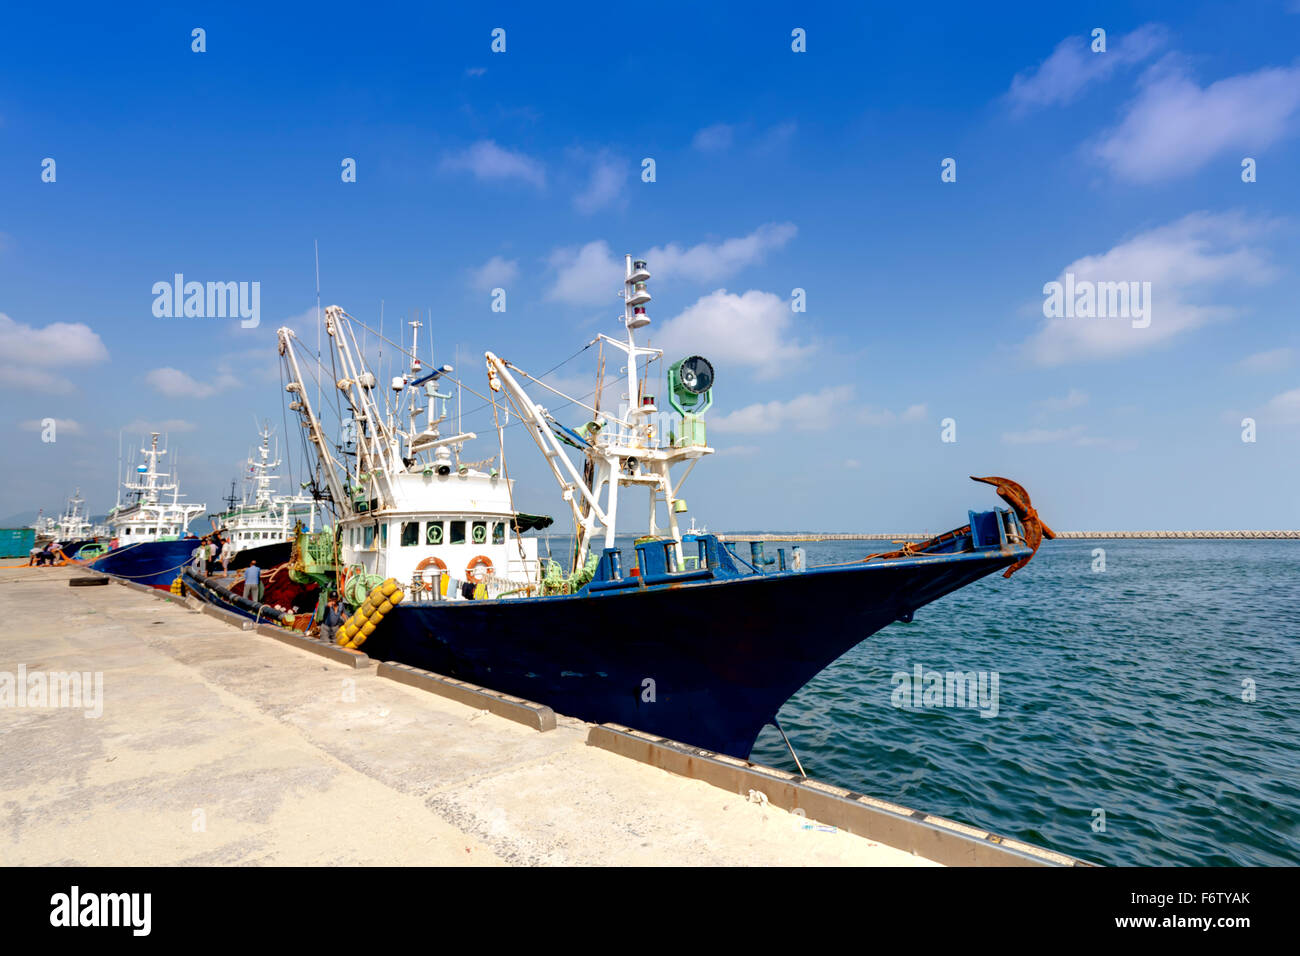 fishing boats docked at harbor Stock Photo